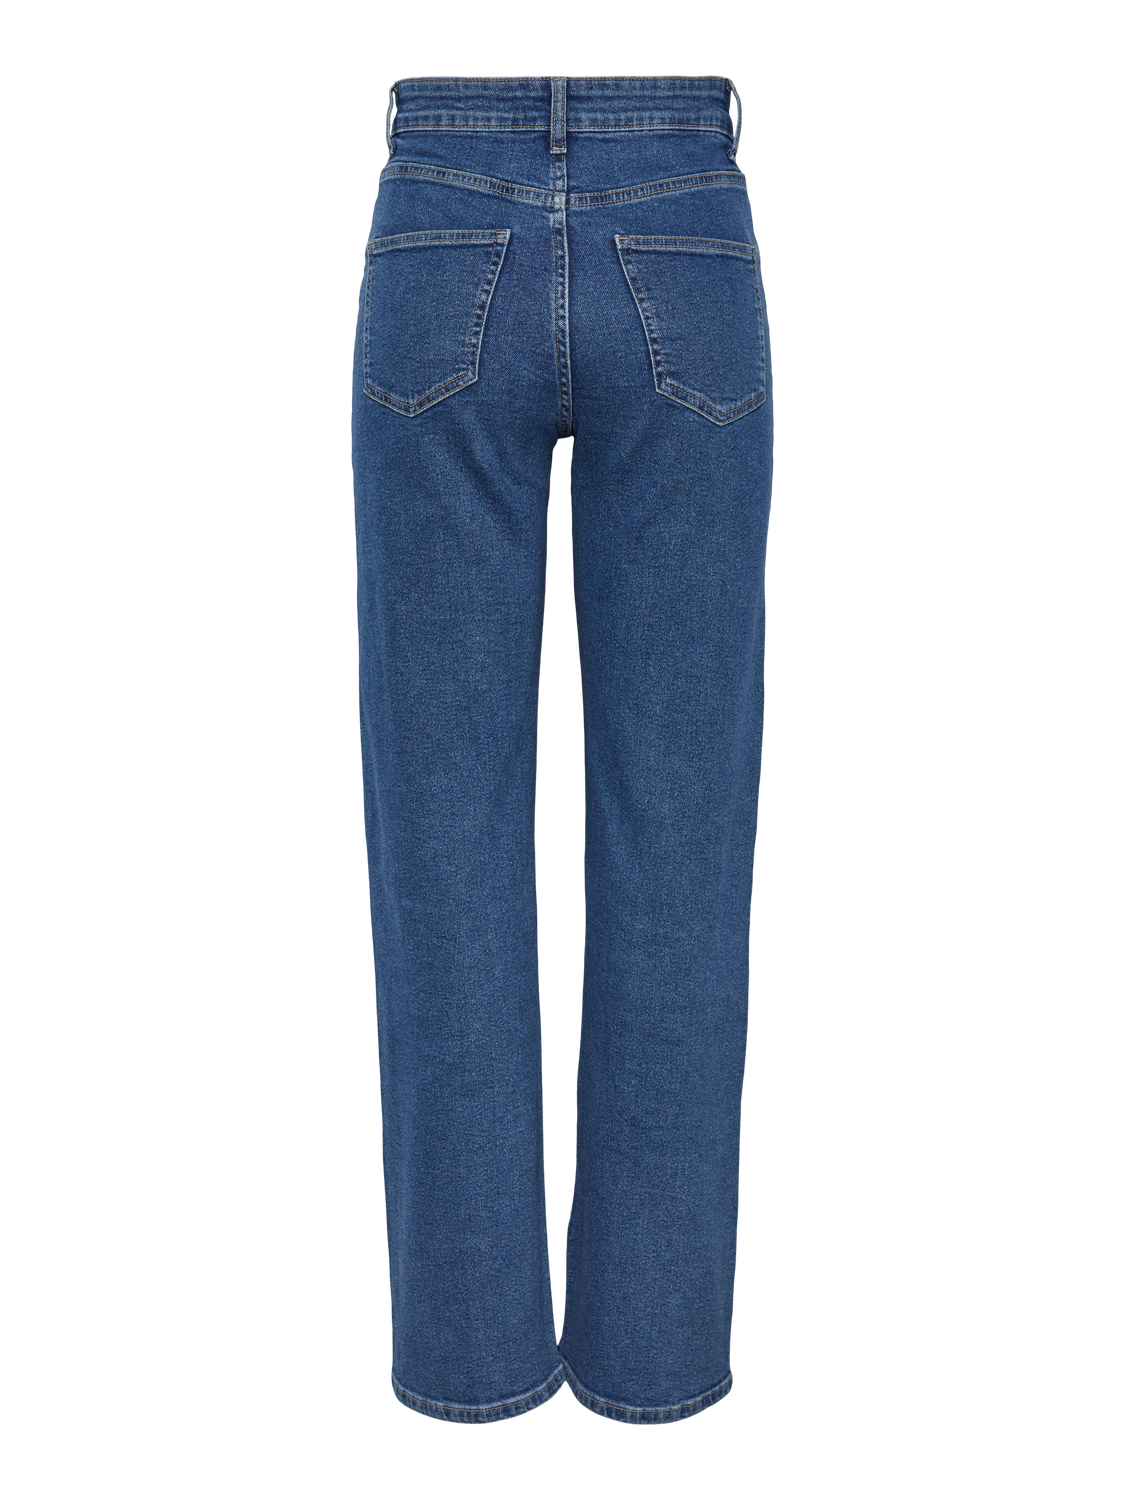 PCSIFFI Jeans - Medium Blue Denim